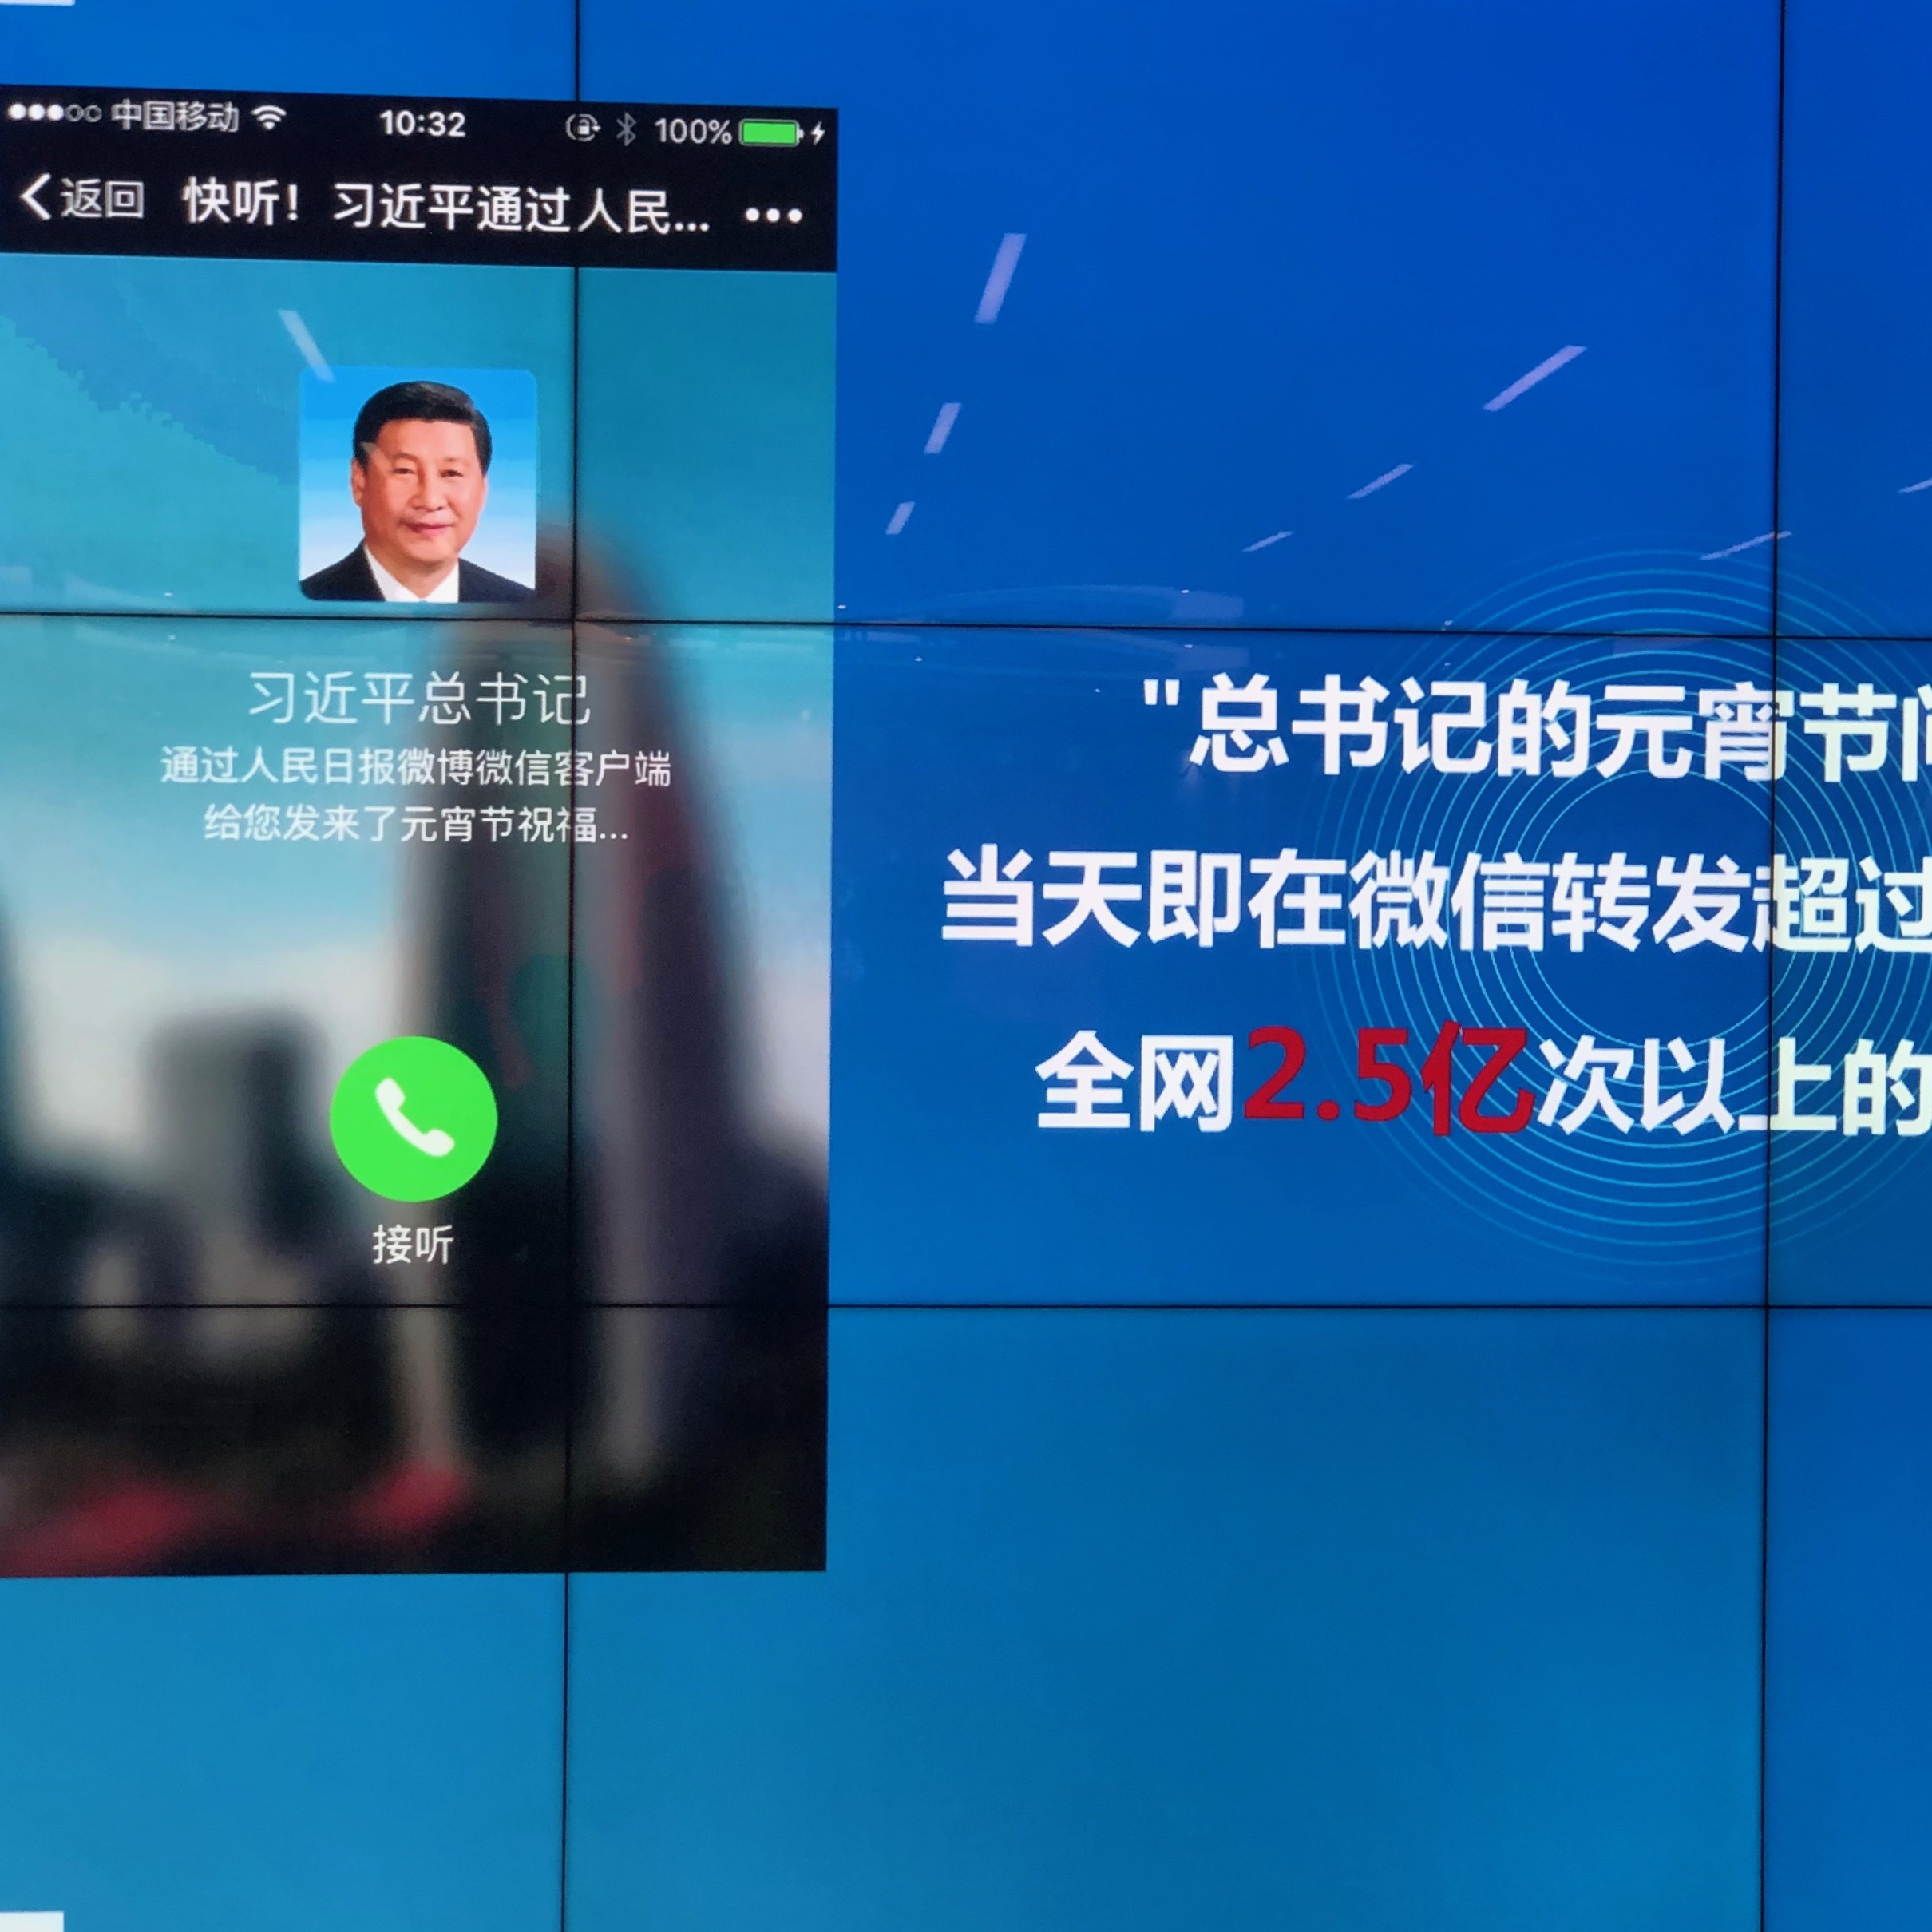 중국 관영 인민일보의 인터넷판 인민망이 2016년 2월 시진핑 중국 국가주석의 명절 인사를 녹음해 전국 각지의 시민에게 전화로 서비스한 영상. 마치 시 주석이 직접 전화한 것 같은 효과로 화제가 됐다.